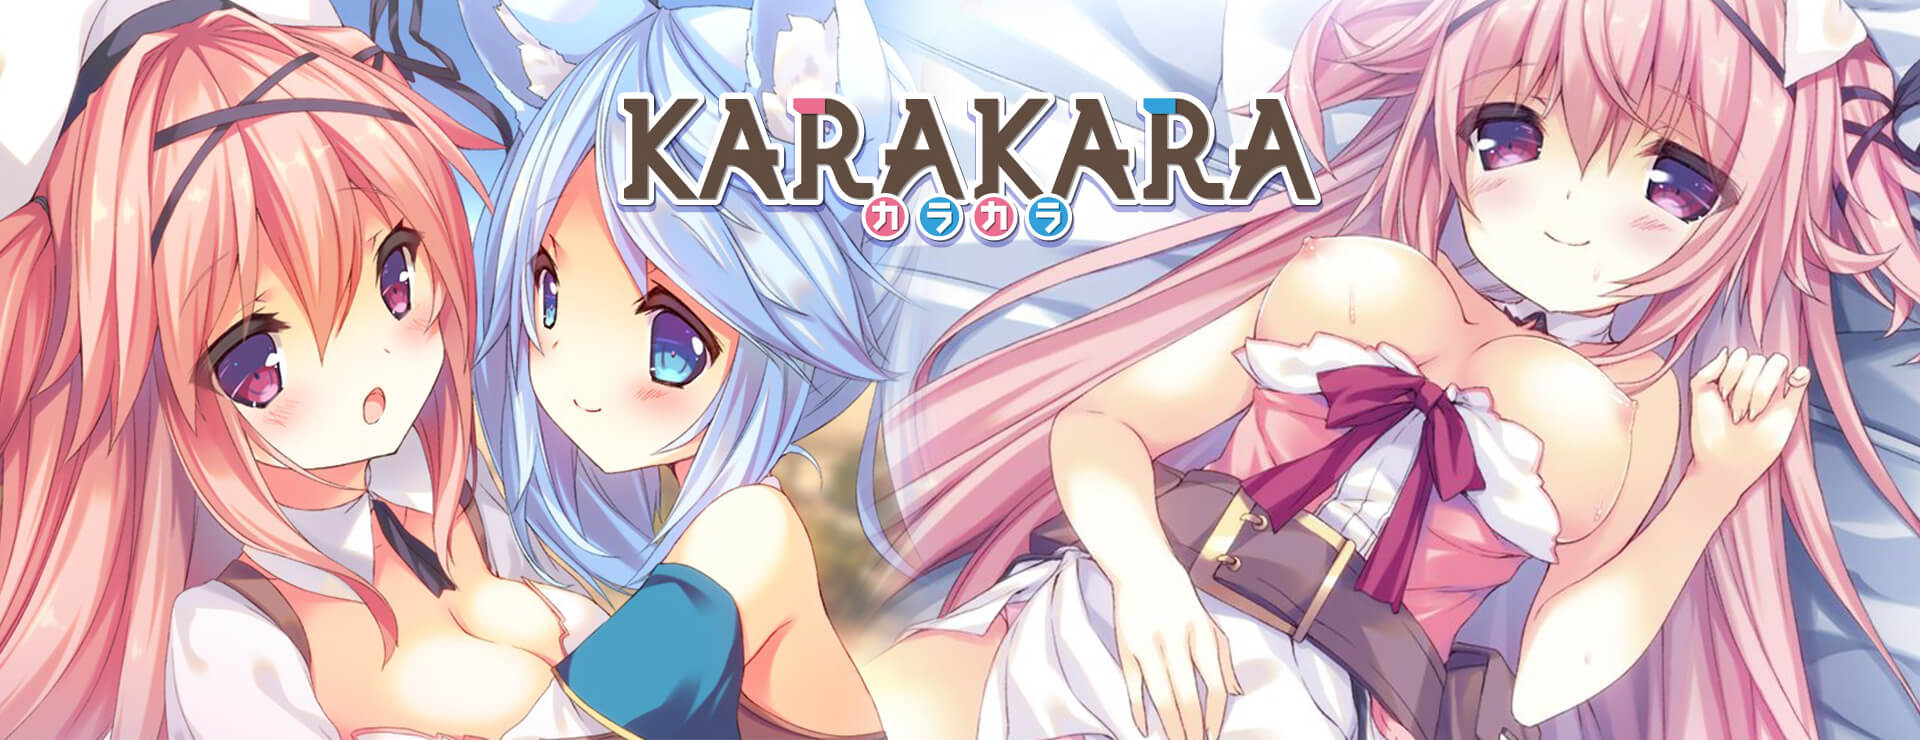 KARAKARA - Novela Visual Juego